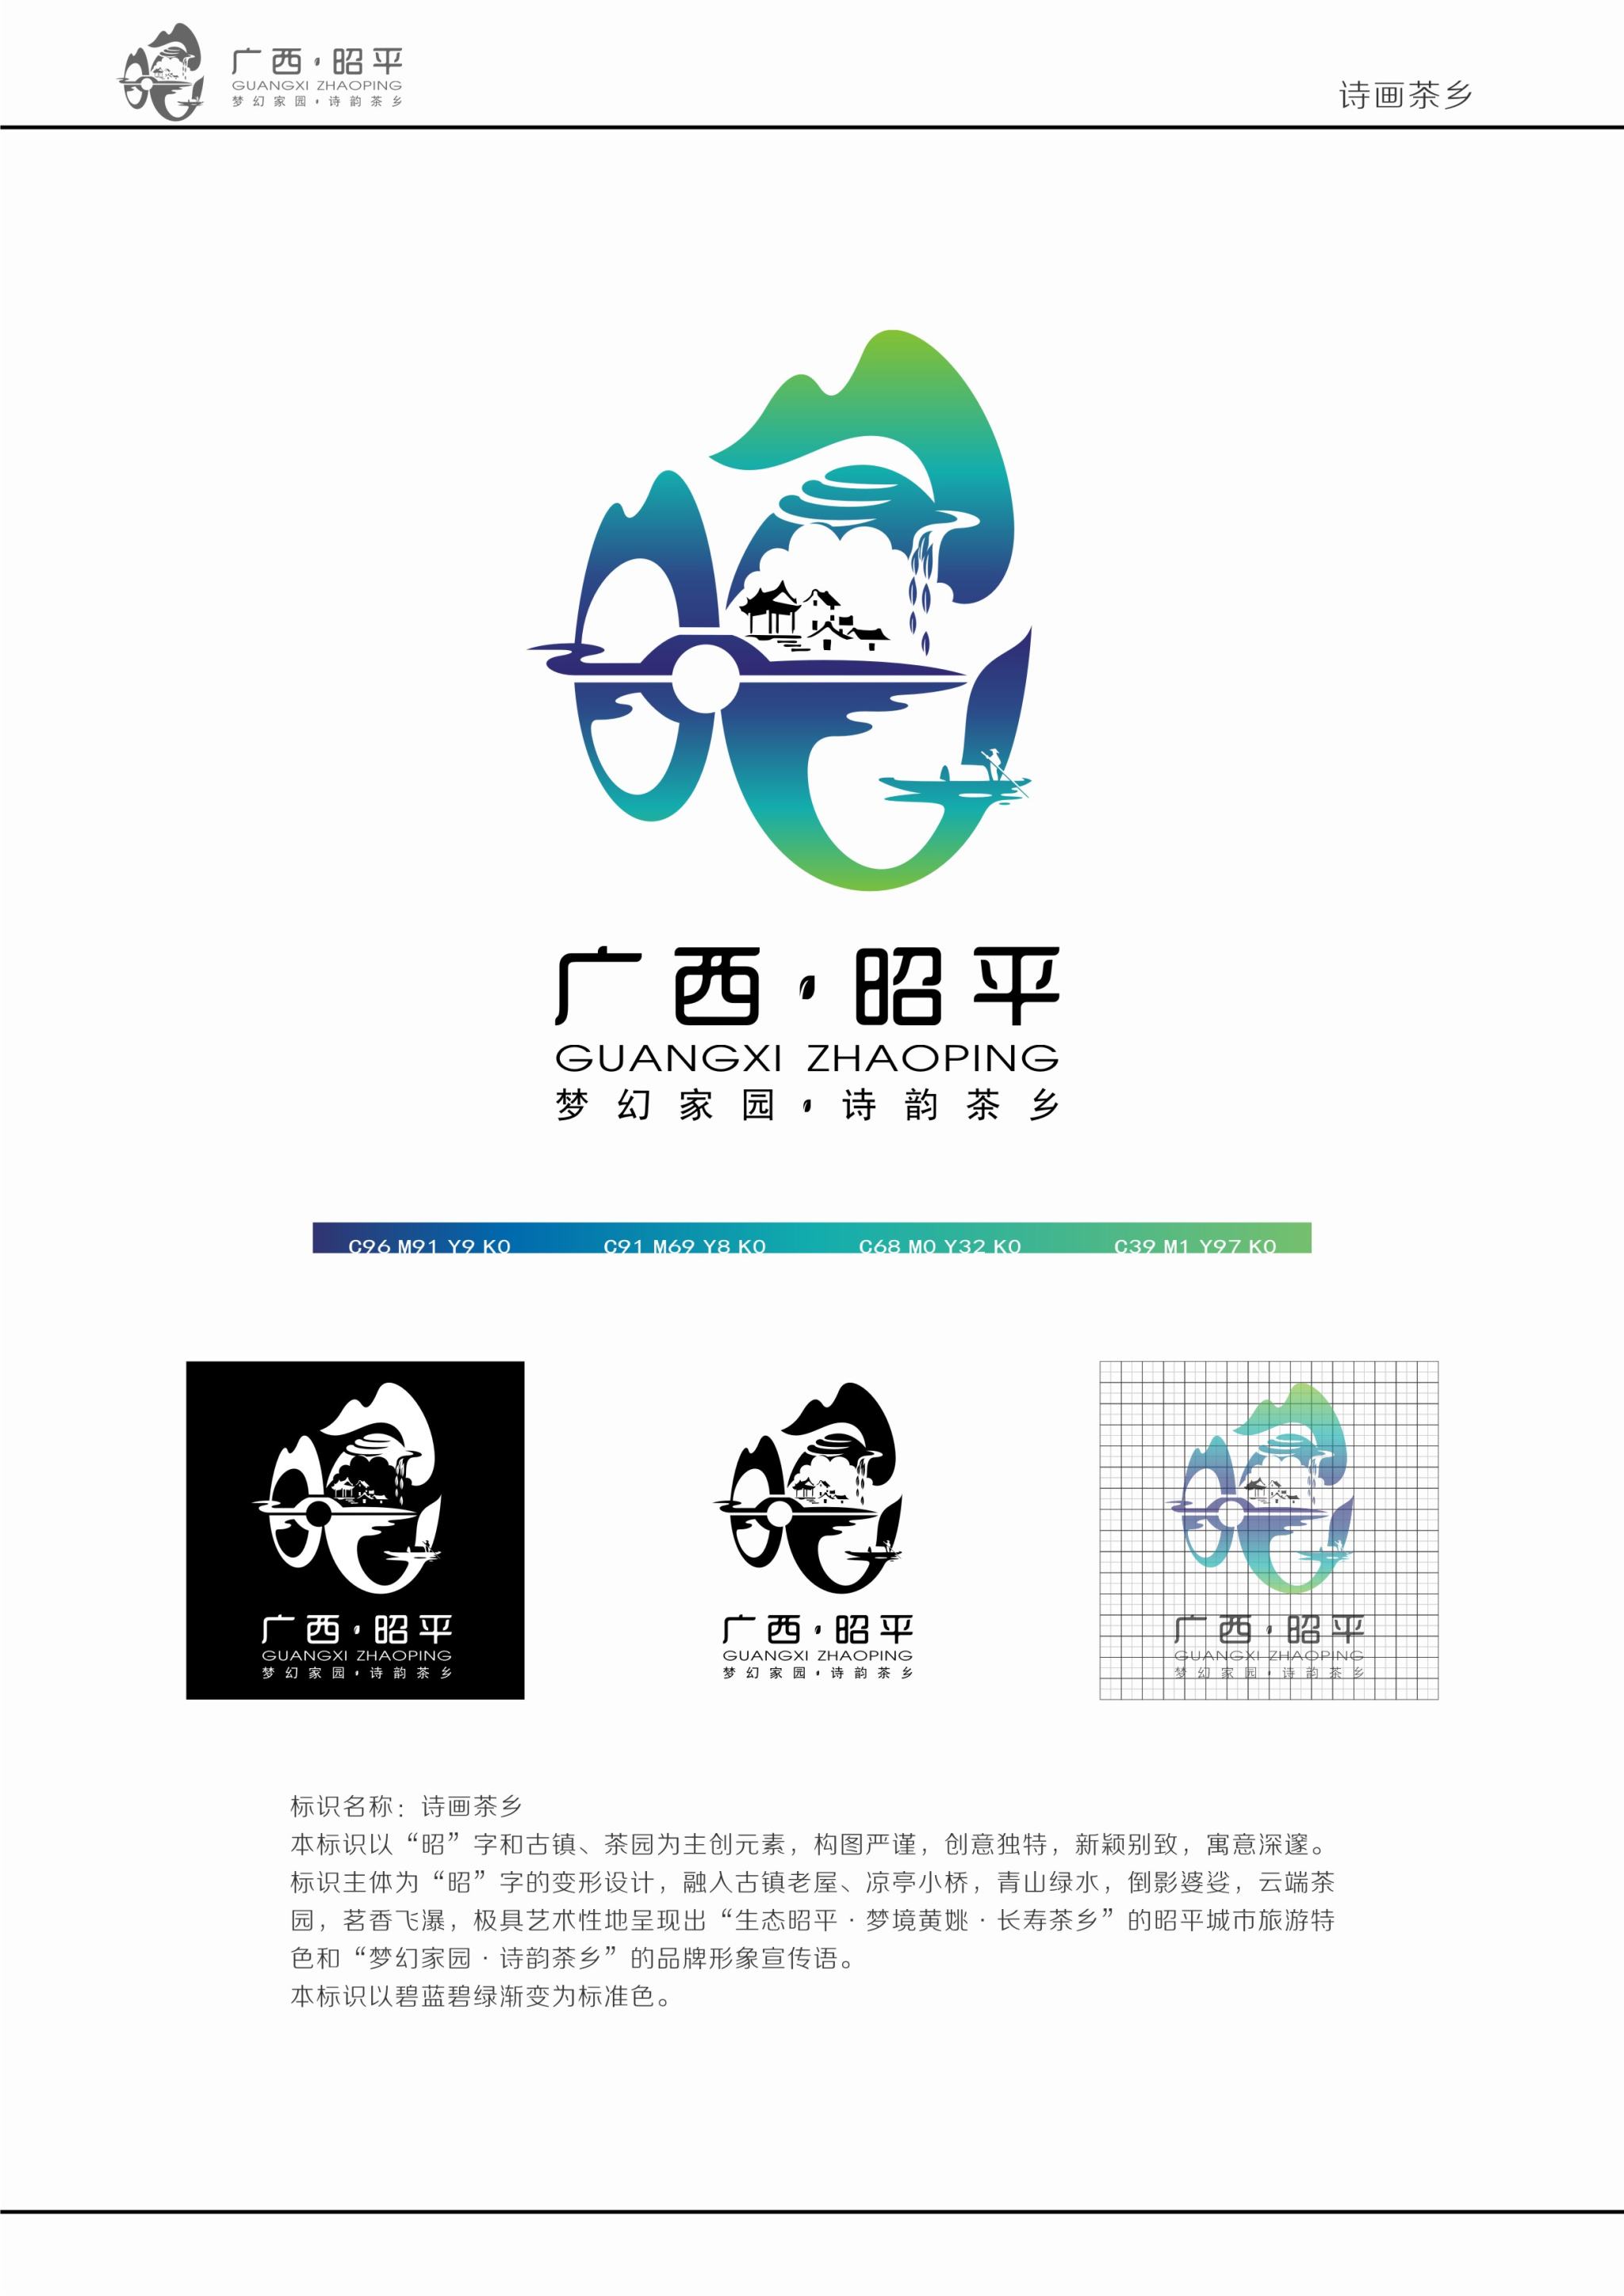 广西昭平县城市旅游形象标识(logo-张新社